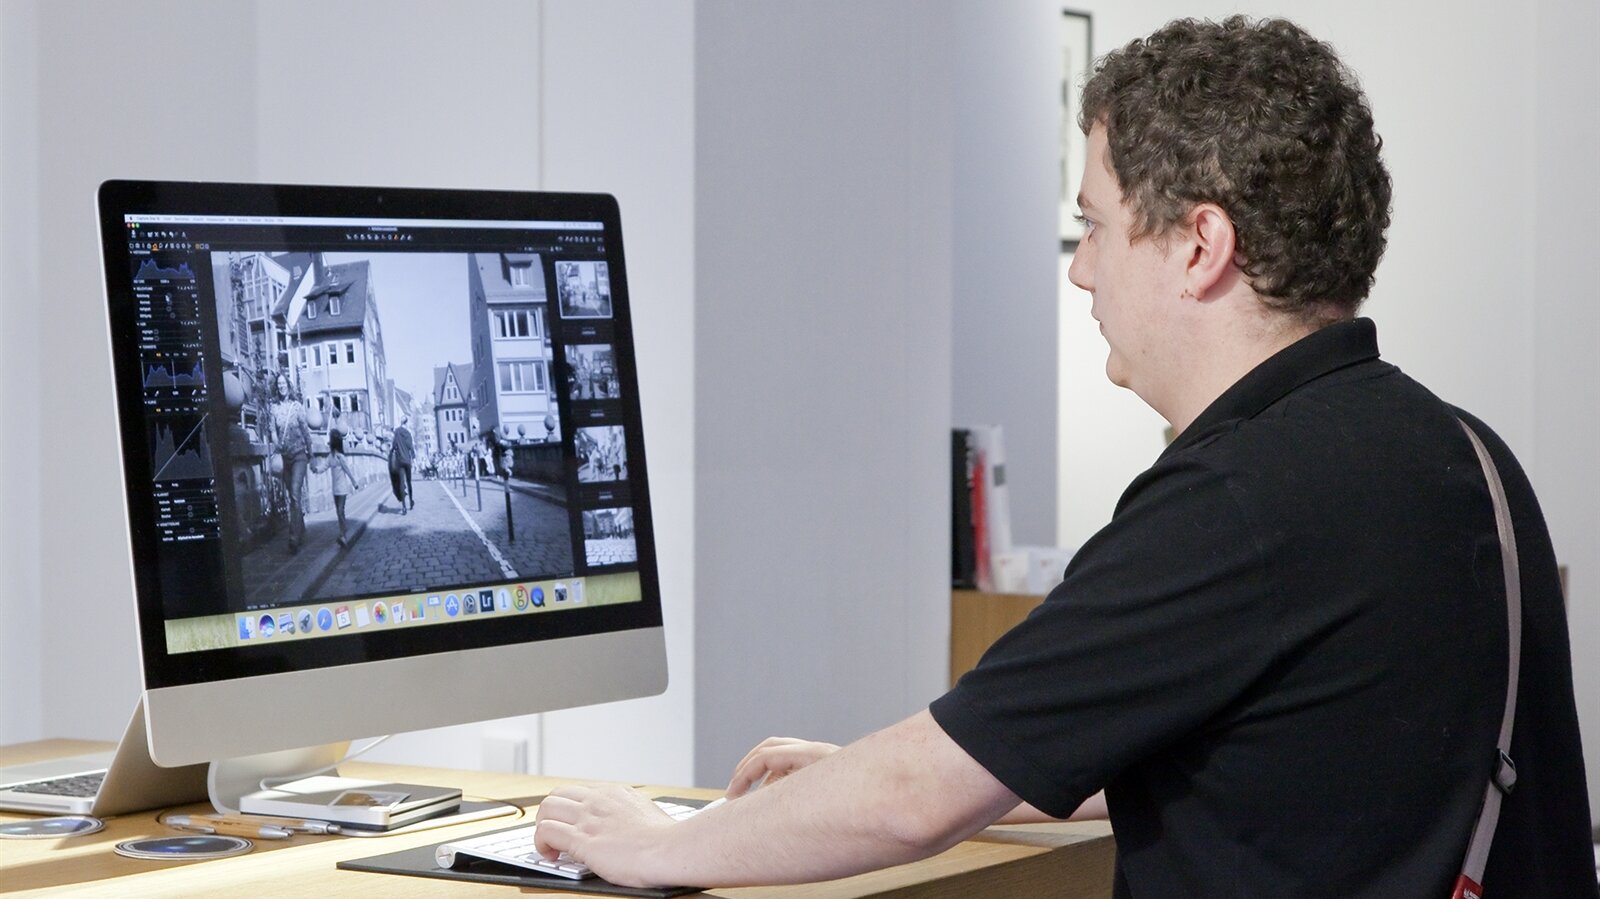 John bearbeitet Kundenbilder am Mac, stellt Sättigungen, Schärfen und Kontraste ein, bevor diese entwickelt/gedruckt werden.